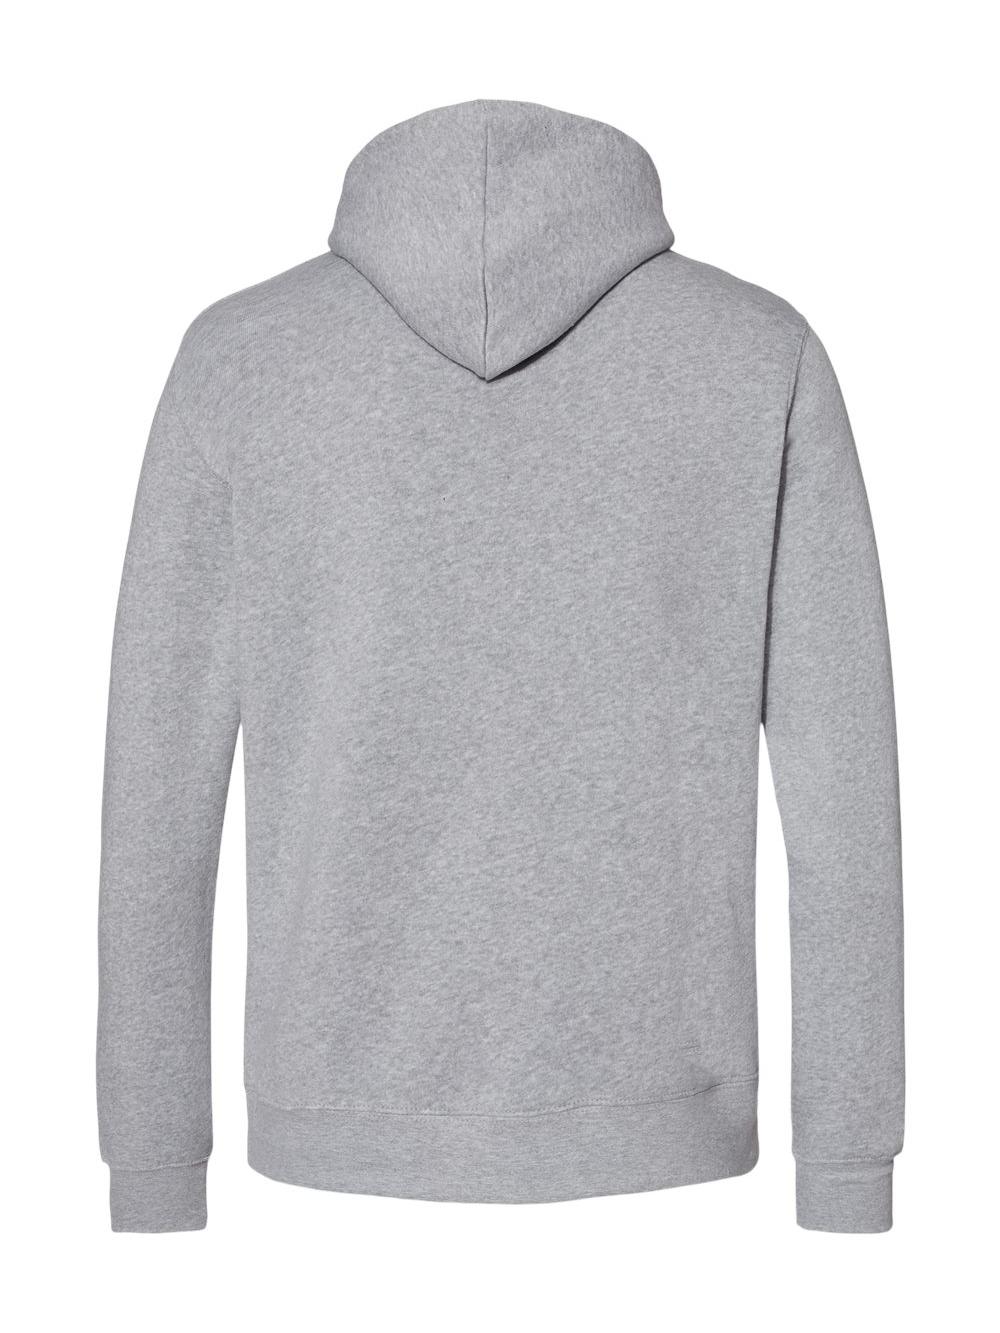 J. America Gaiter Fleece Hooded Sweatshirt - image 2 of 2